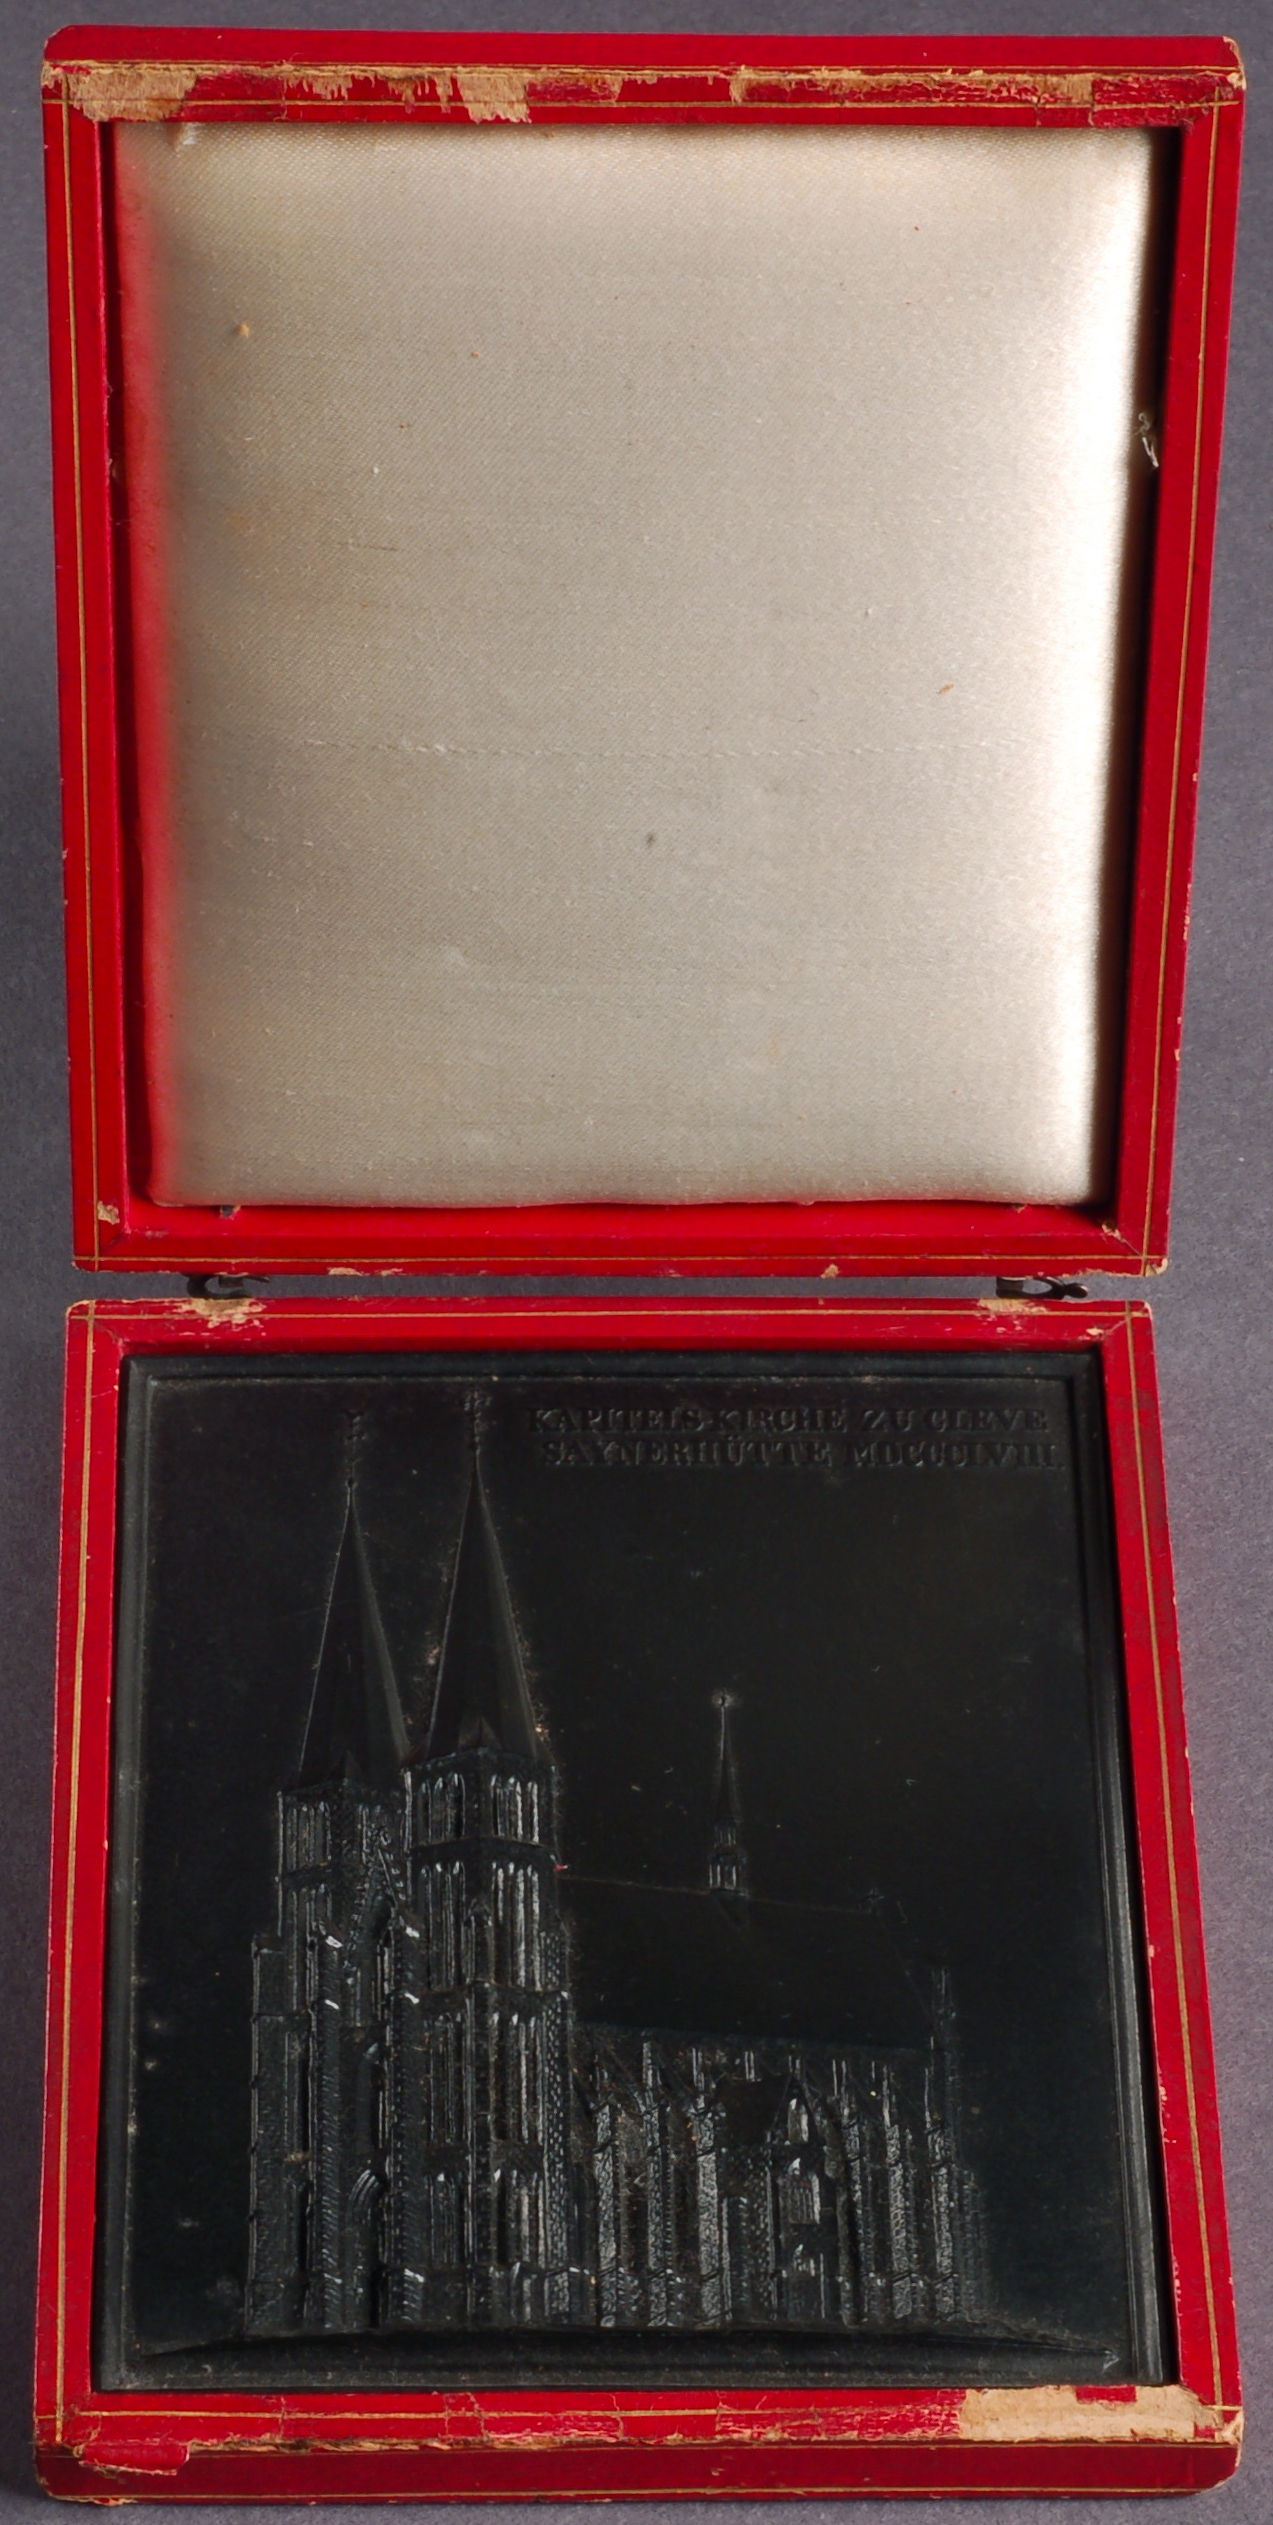 Sayner Neujahrsplakette 1858 "Capitelskirche zu Cleve" mit Etui (Rheinisches Eisenkunstguss-Museum CC BY-NC-SA)